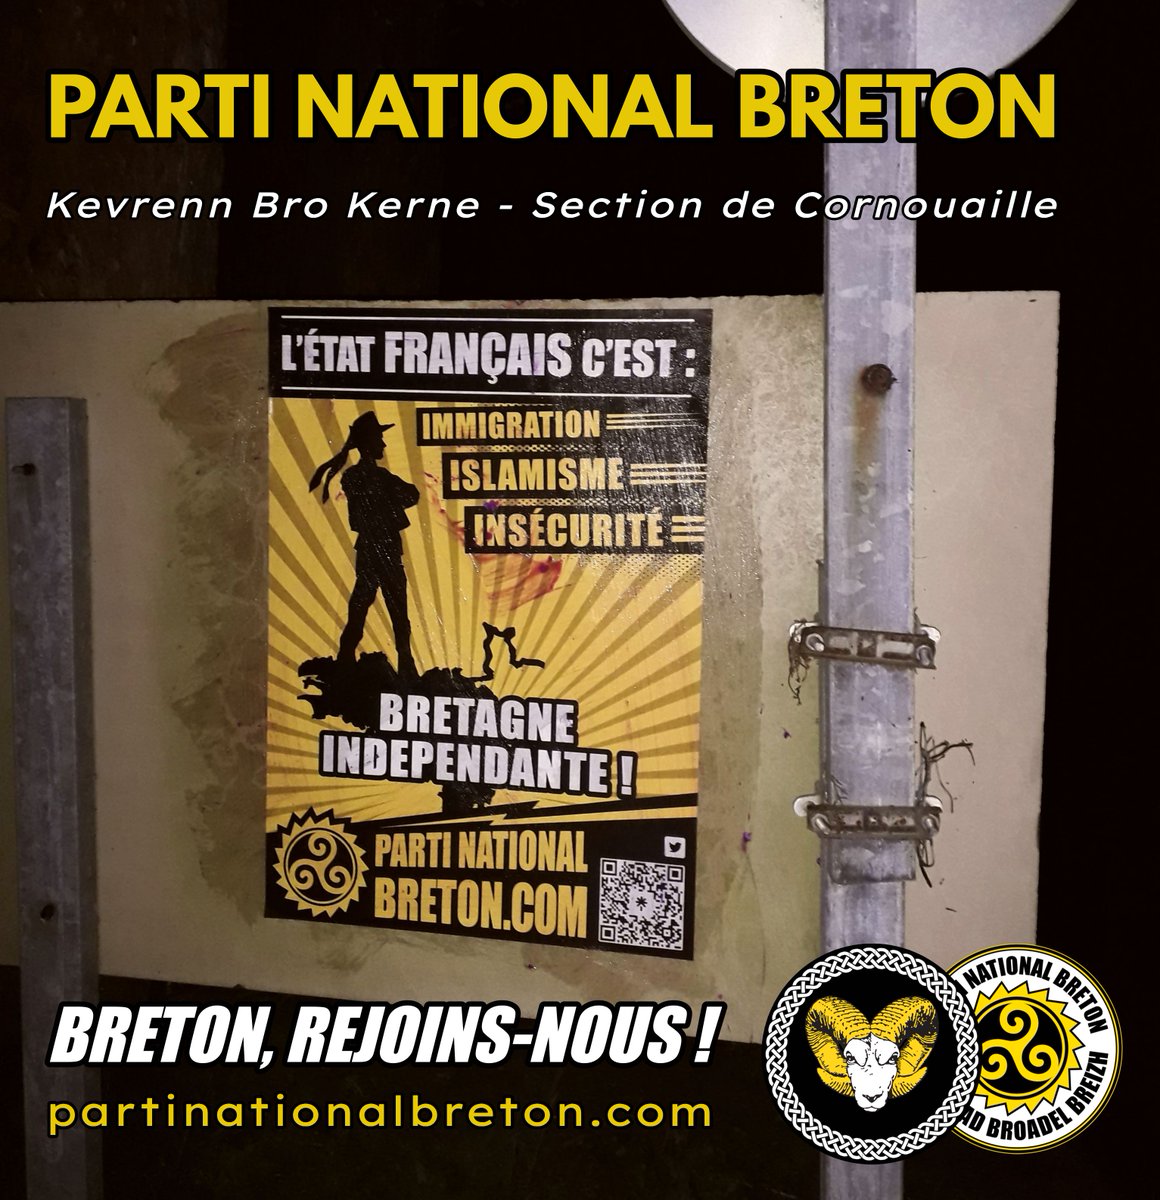 🟨⬛️ Le Parti National Breton structure sa présence en Cornouaille. Ce weekend, les militants du PNB ont mené une action d'affirmation nationale dans le Pays Bigouden 🔥👊

➡️Rejoignez-nous : partinationalbreton@yandex.com